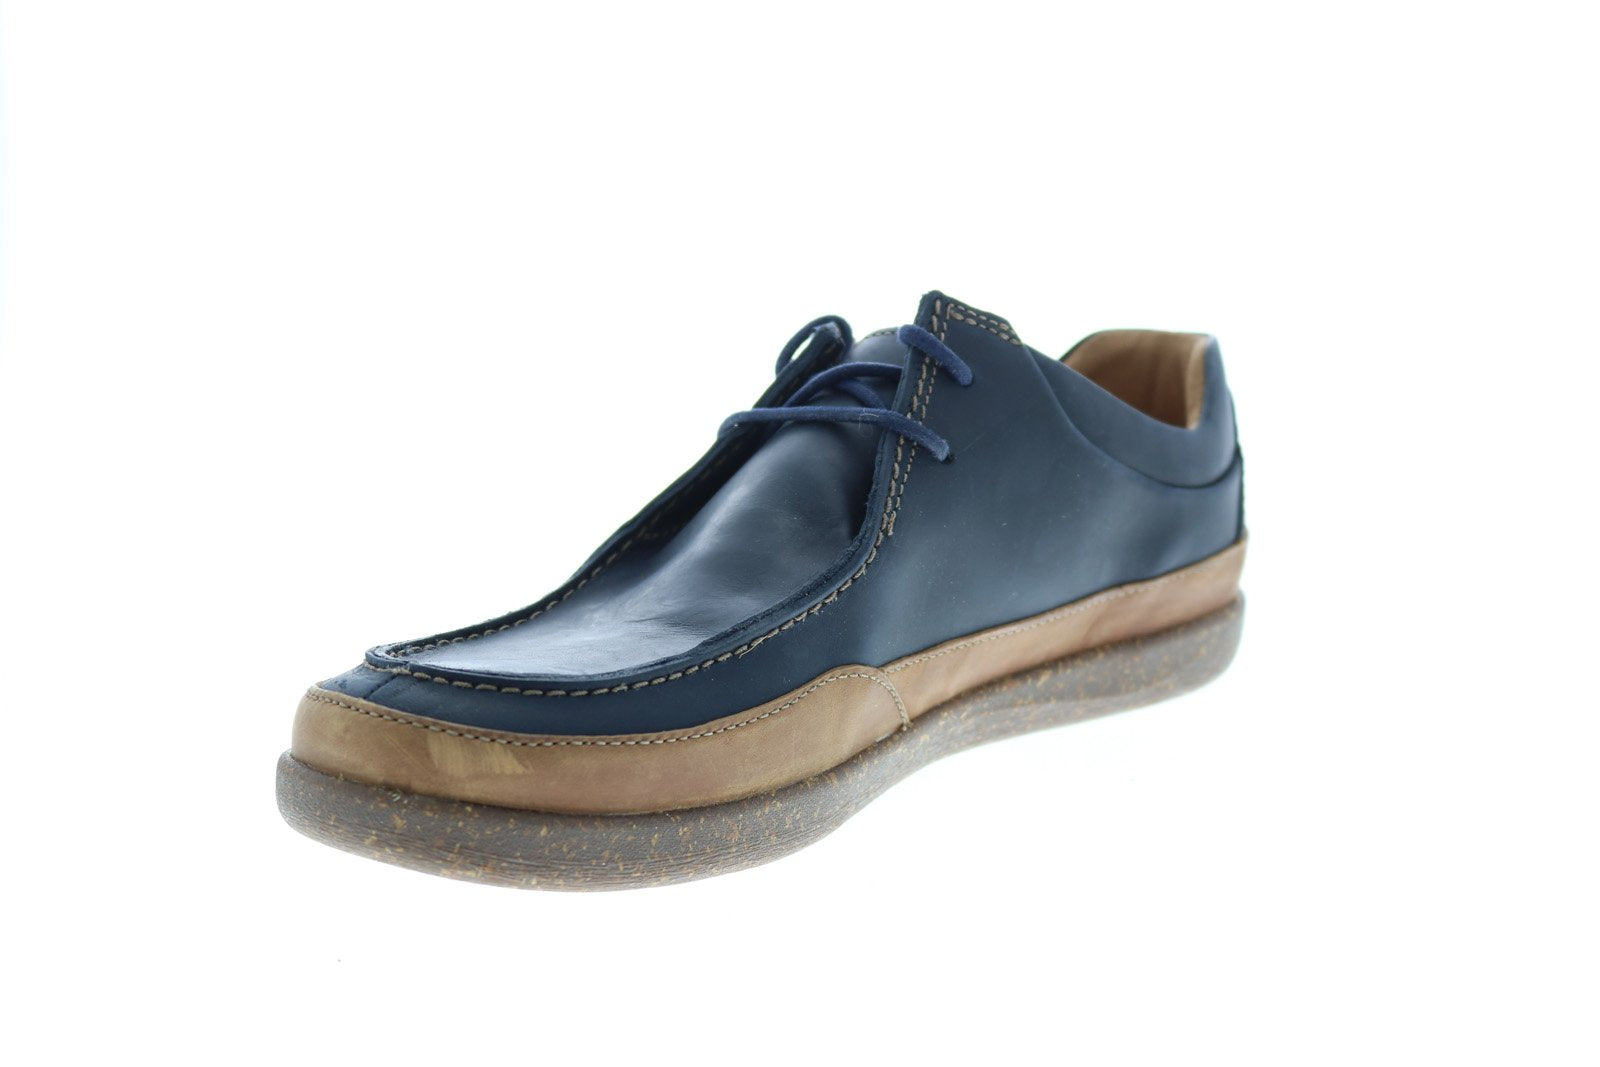 Clarks Un Lisbon Walk 26149691 Blue Leather Oxfords Plain Toe Sho Ruze Shoes